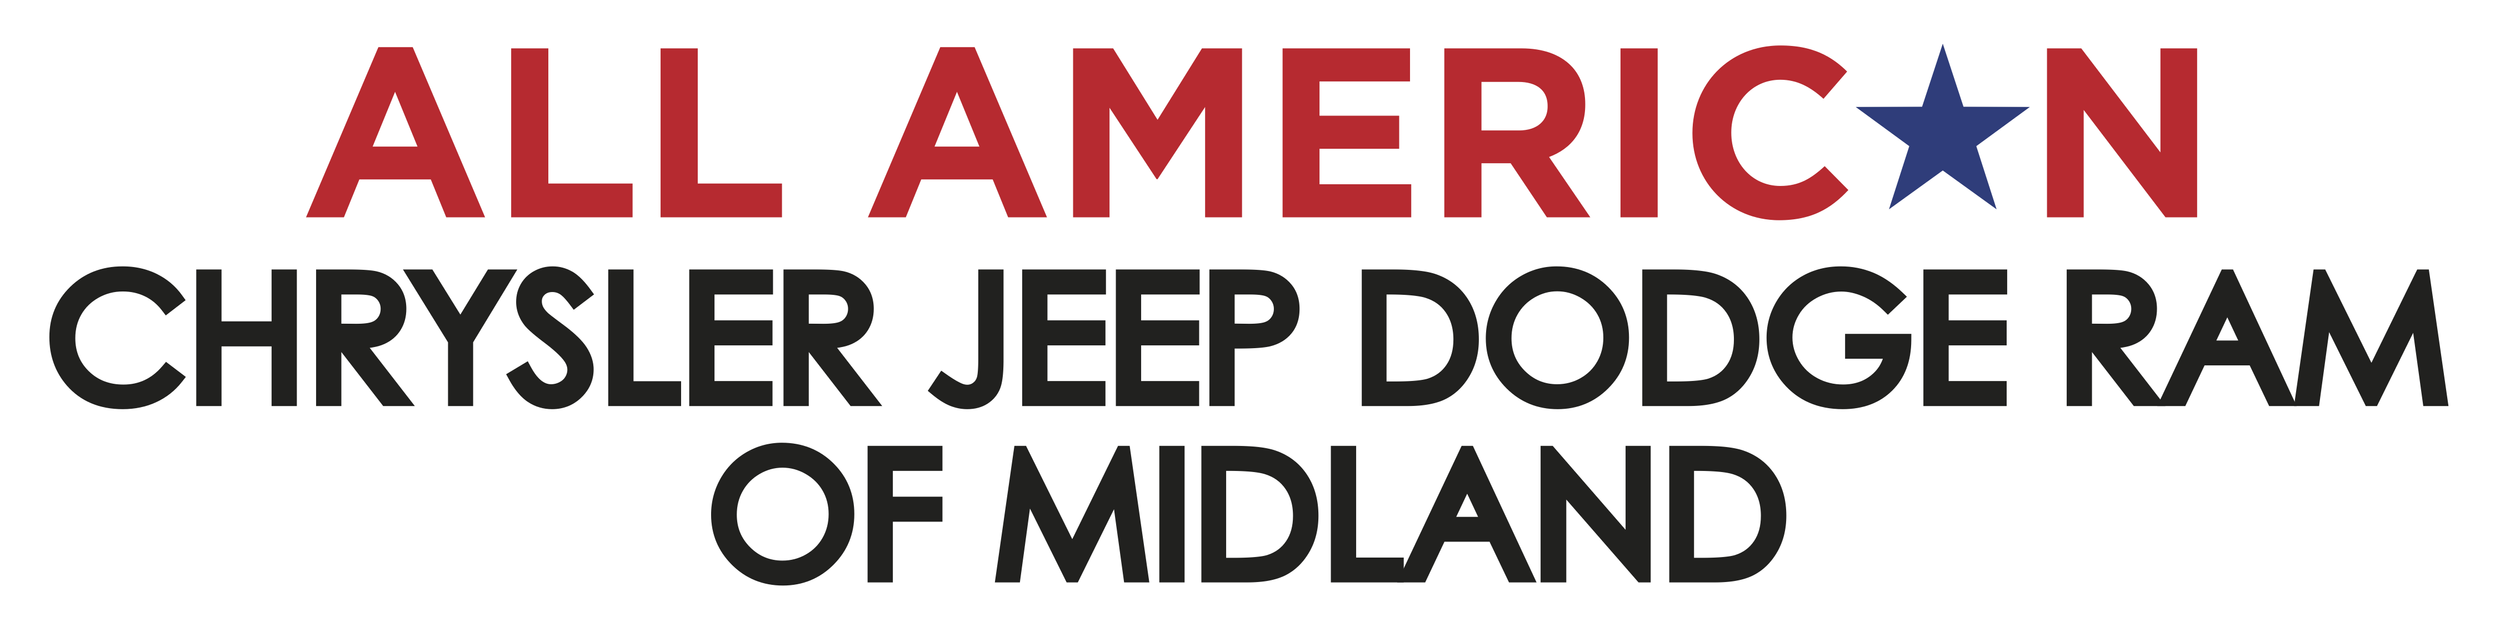 MidlandCJD_Logo.png